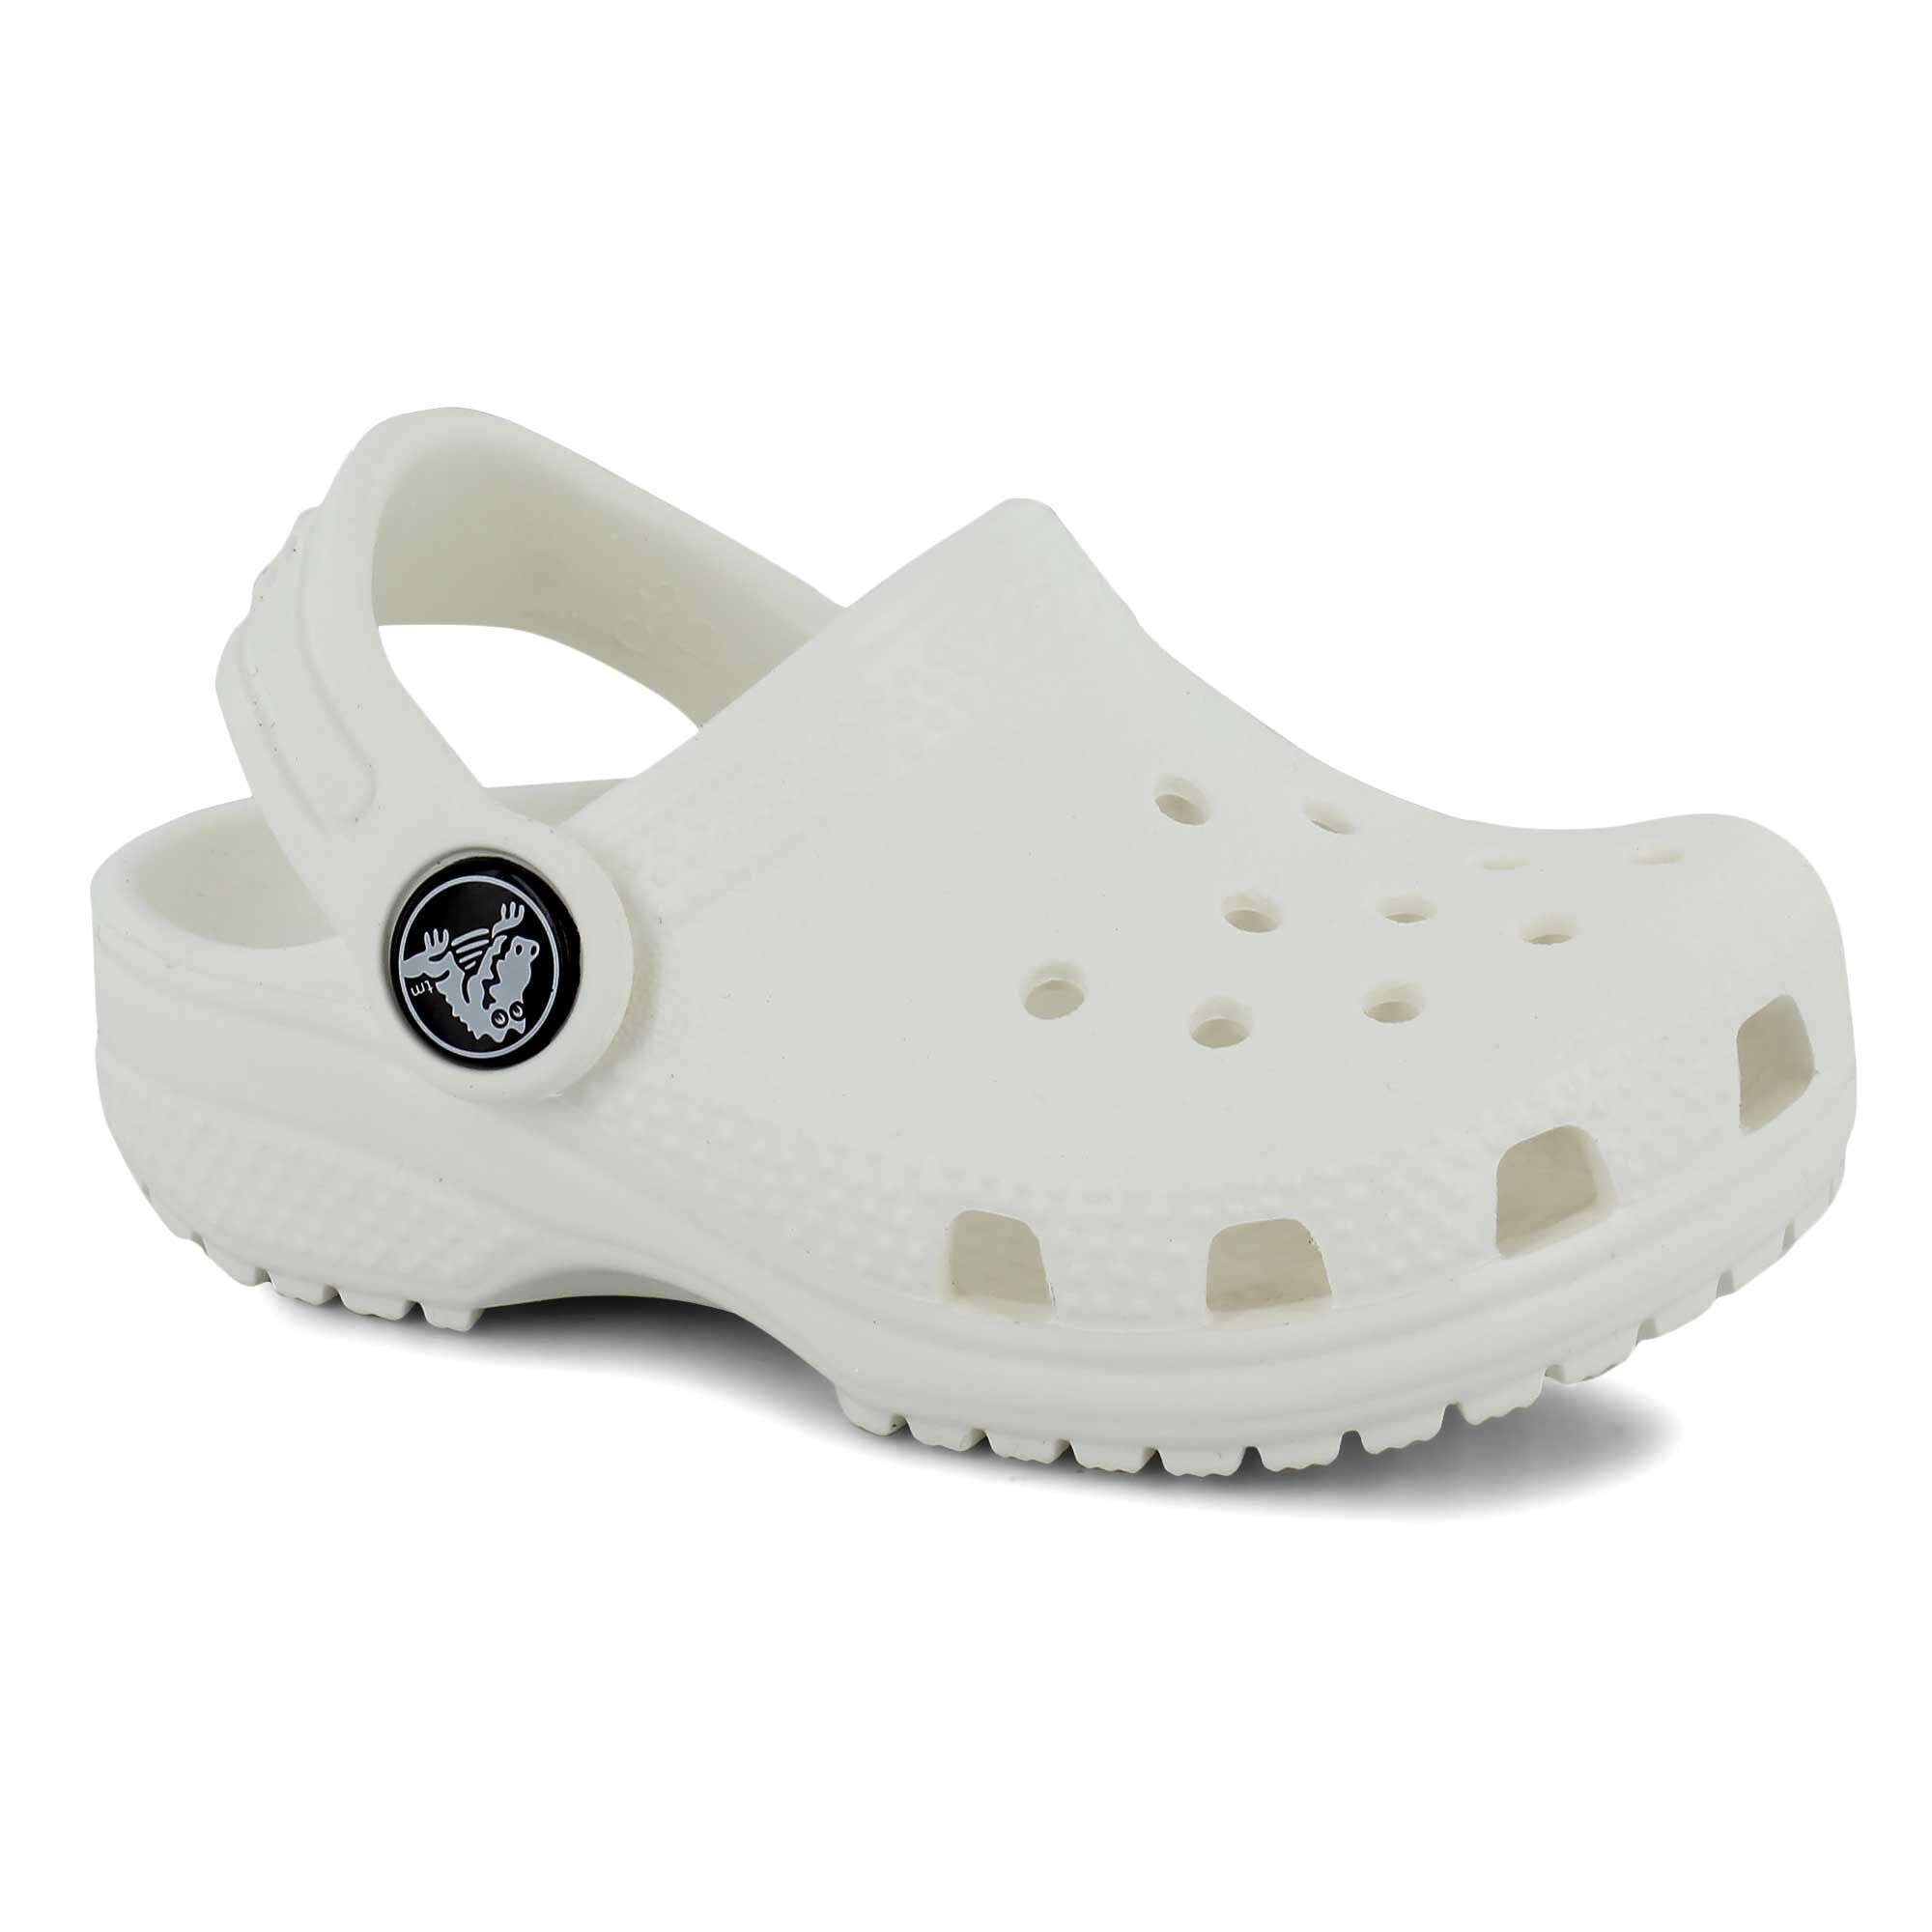 crocs at shoe dept